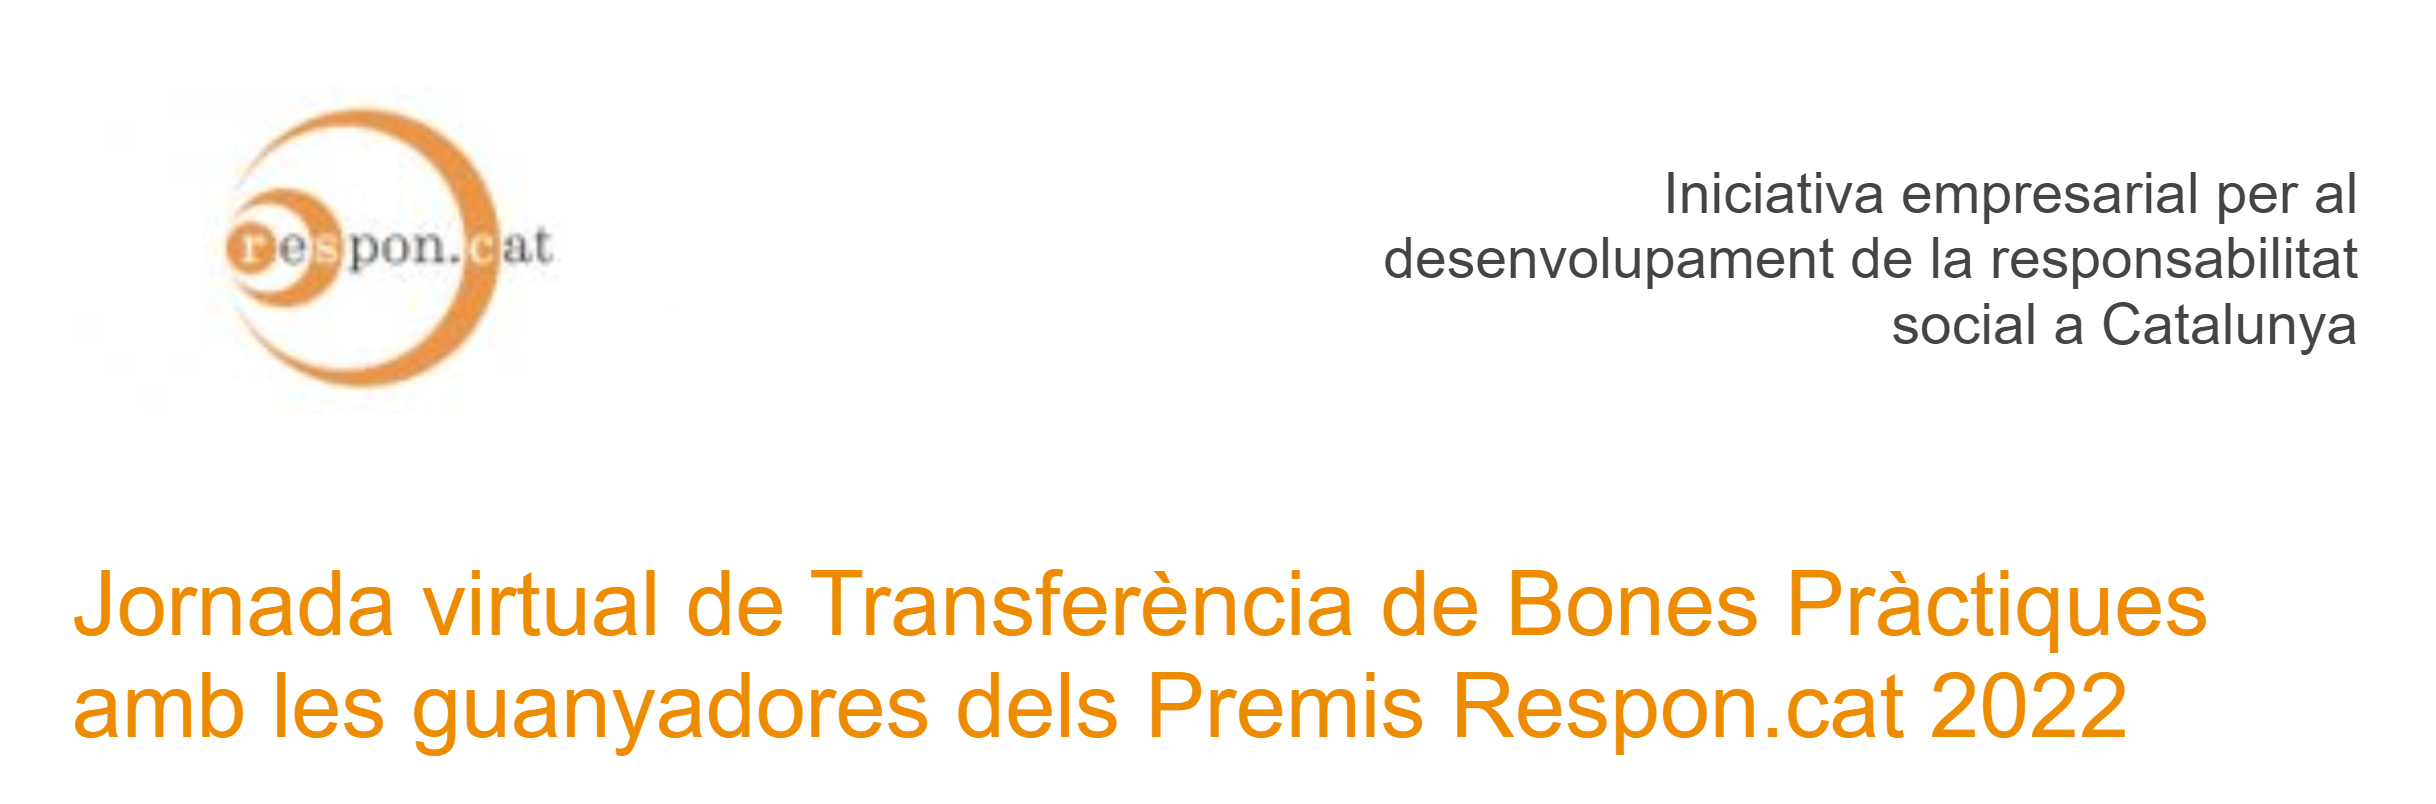 Jornada de transferència de Bones Pràctiques amb les empreses guanyadores dels Premis Respon.cat 2022